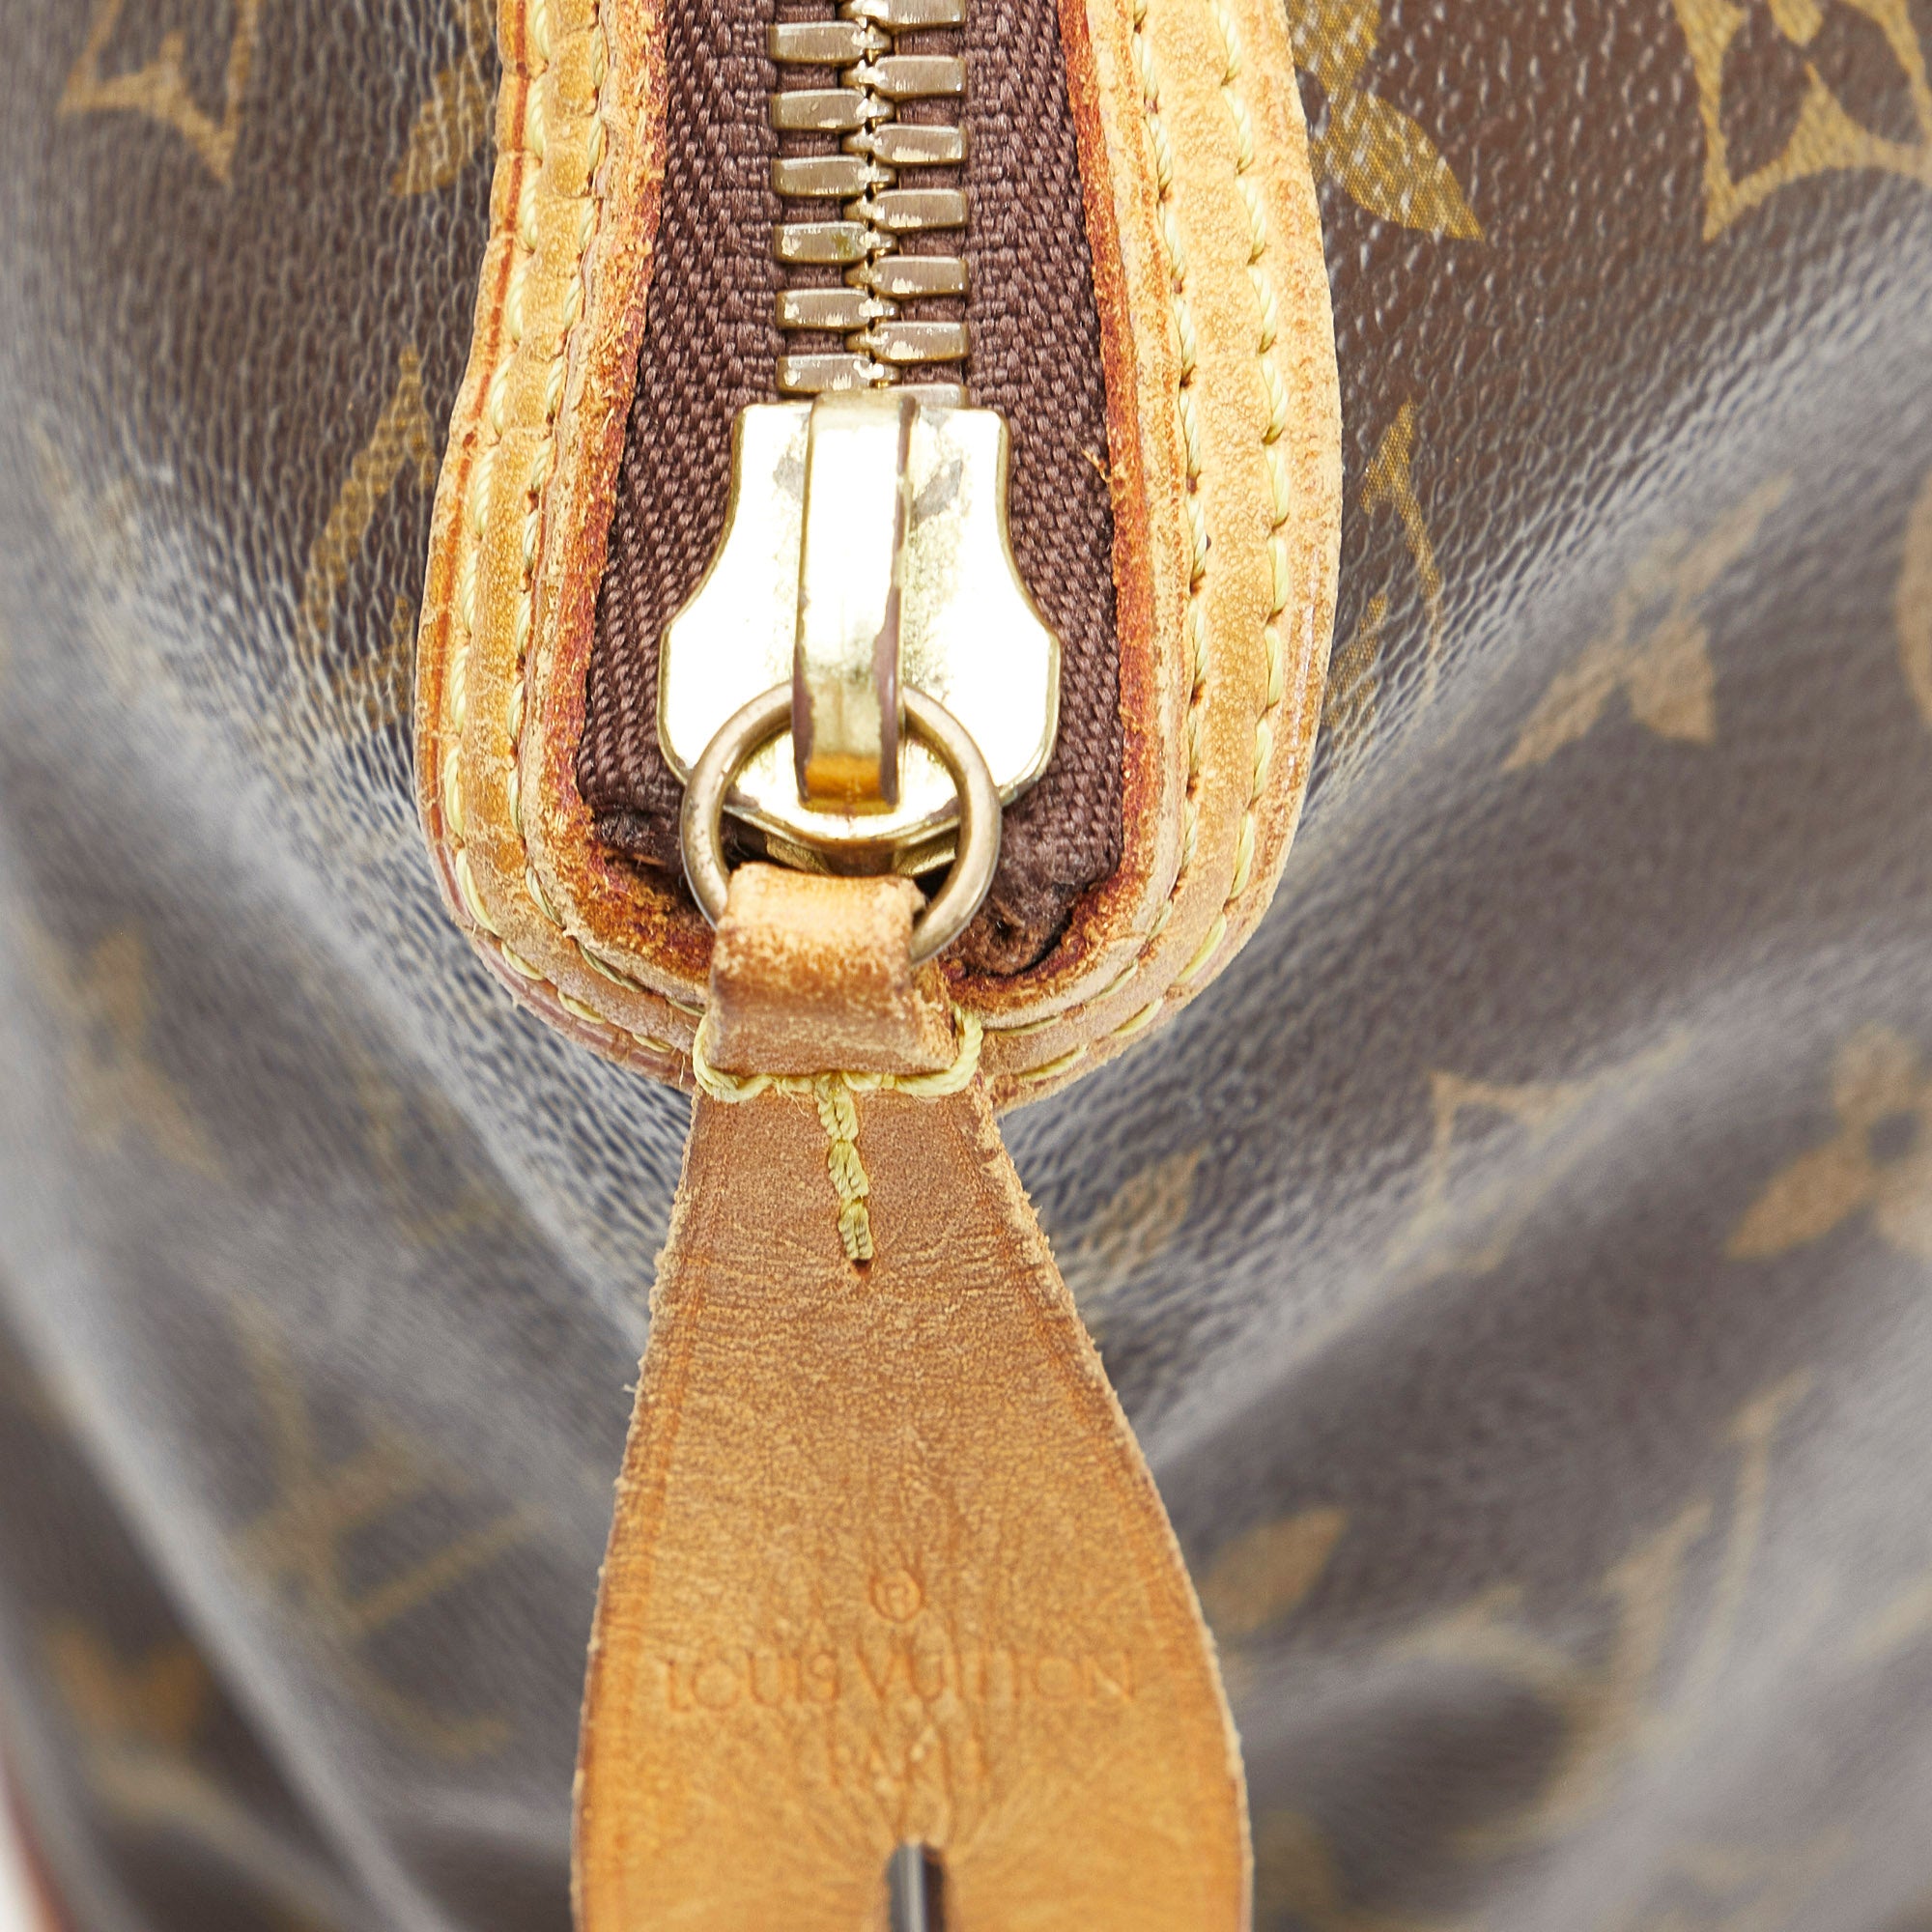 Brown Louis Vuitton Monogram Lockit Horizontal Handbag – Designer Revival